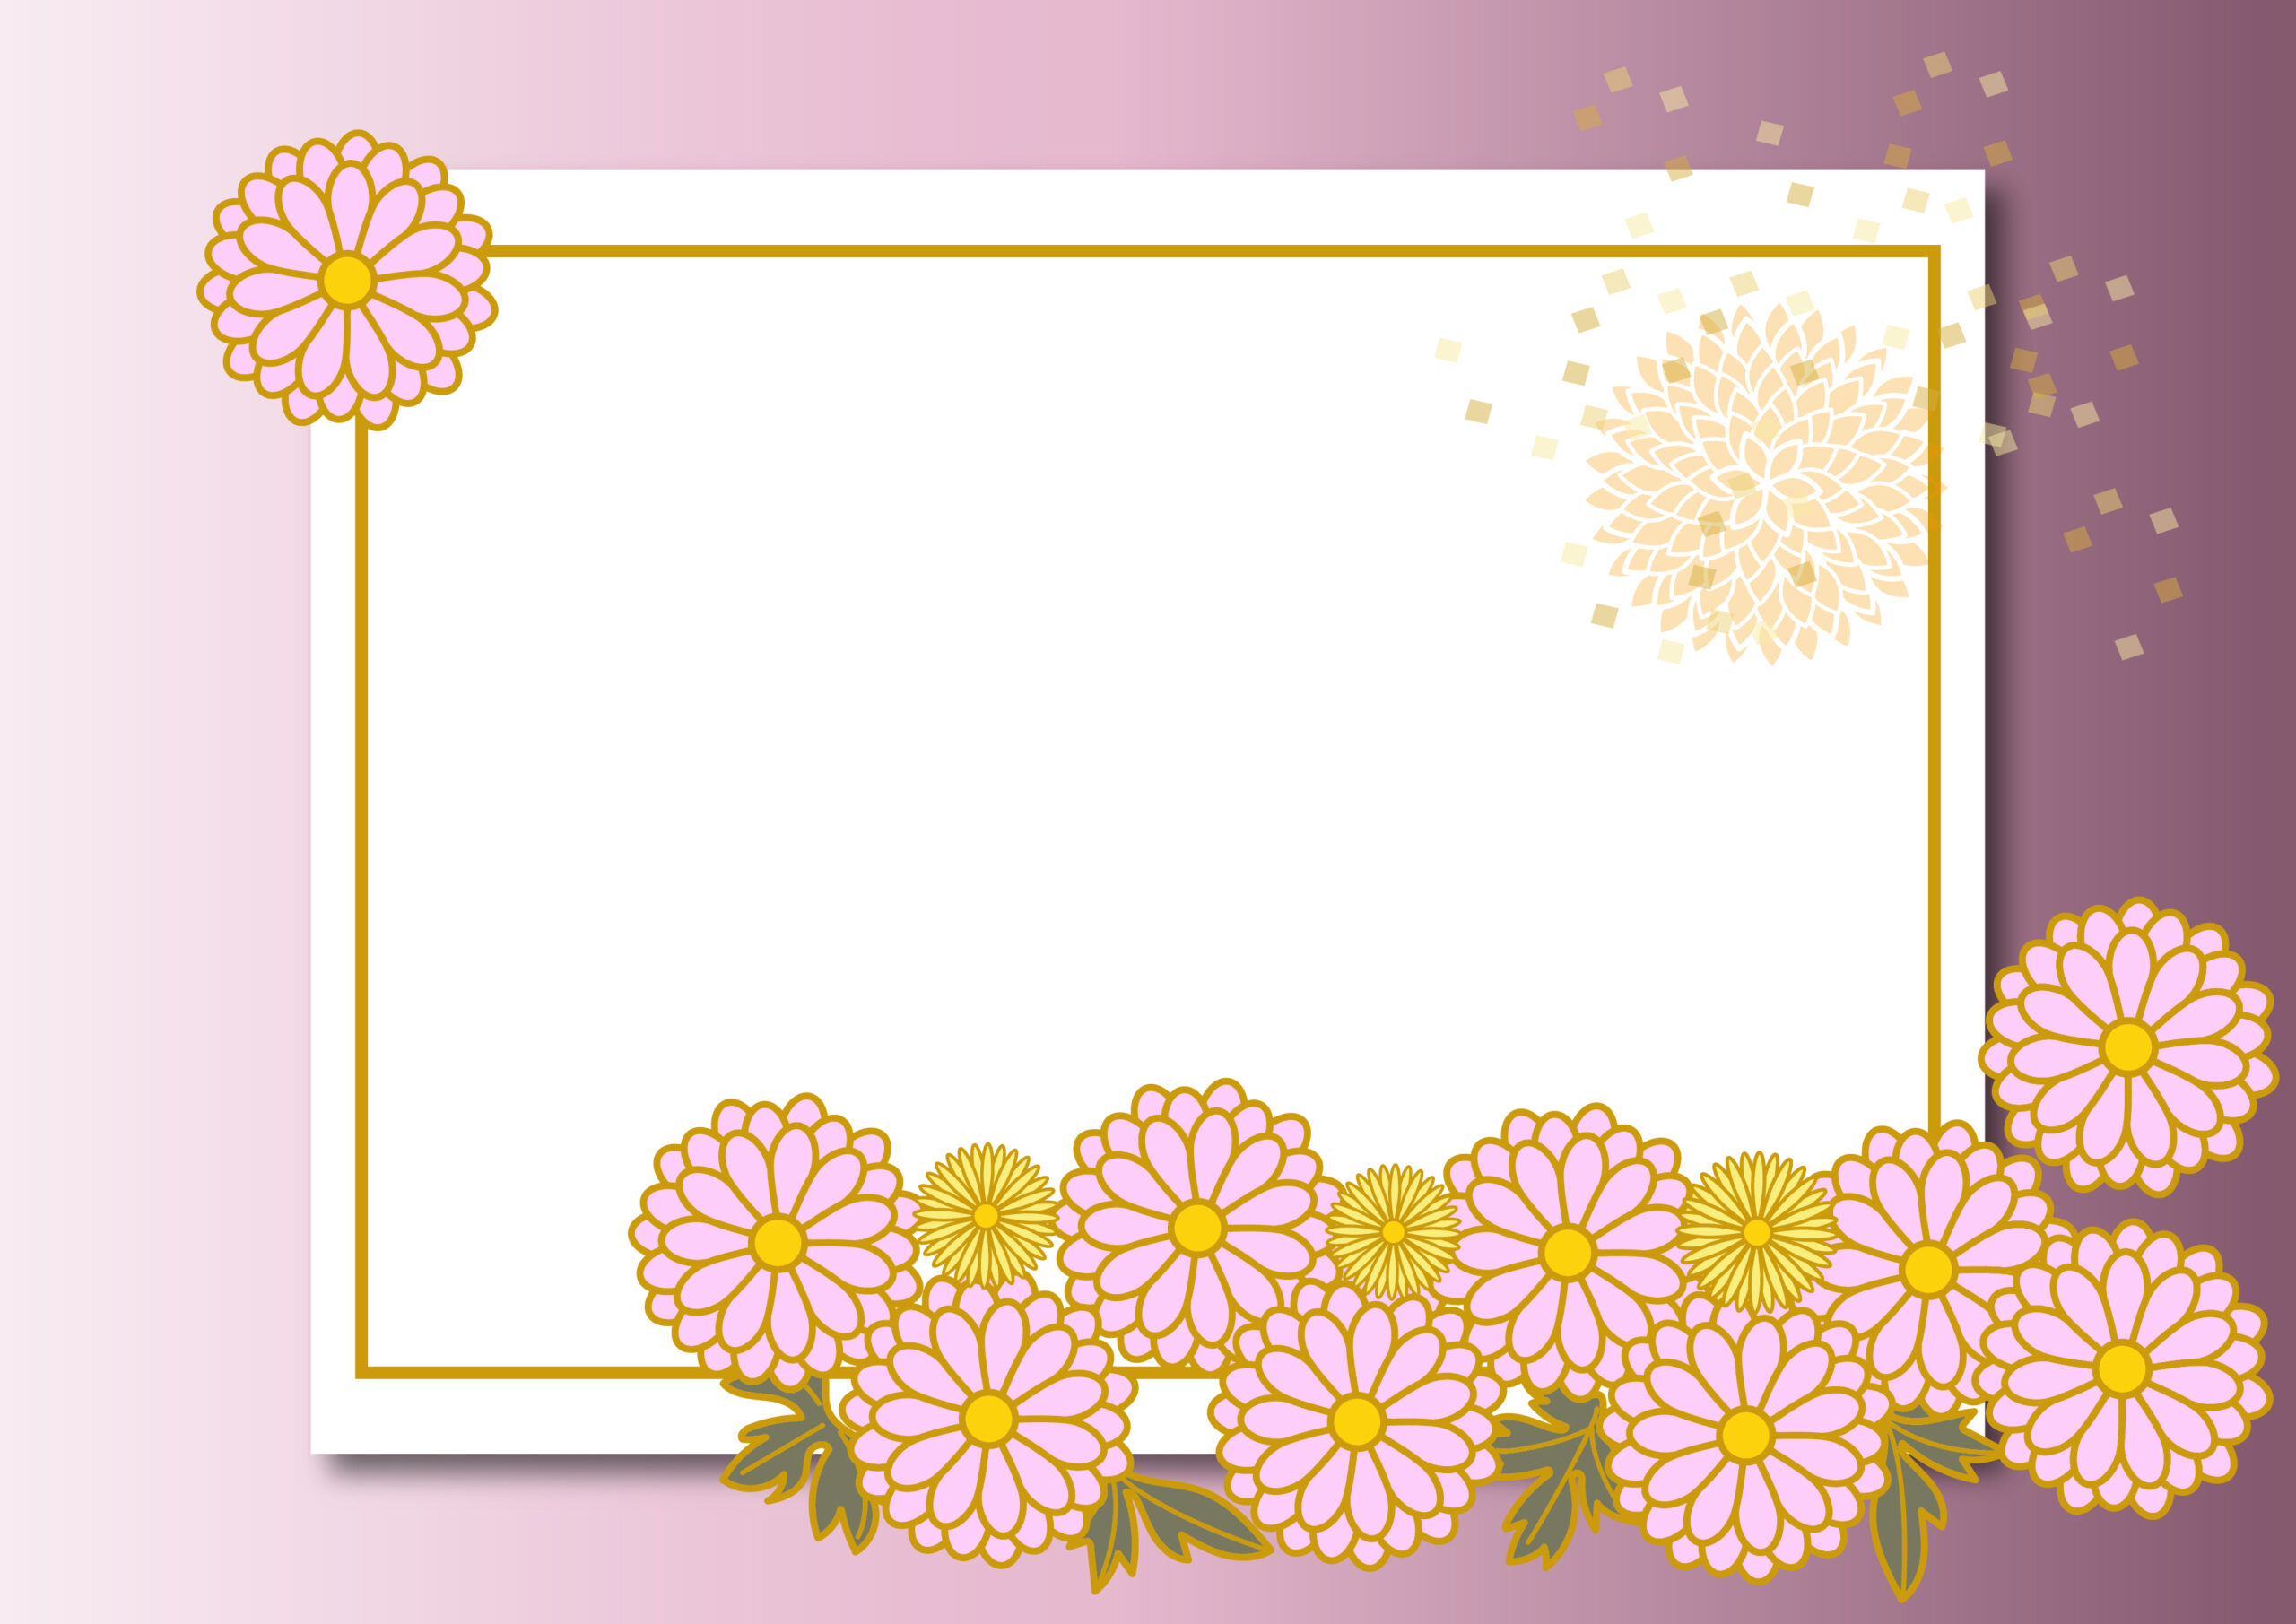 成人式や着物姿で撮影した写真のフレームにおすすめのおしゃれな飾り枠になります。紫のグラデーションカラーが背景となり落ち着いた上品なフレーム素材となっております。菊の花のイラスト入りで和風デザインのテンプレートになります。ダウンロード